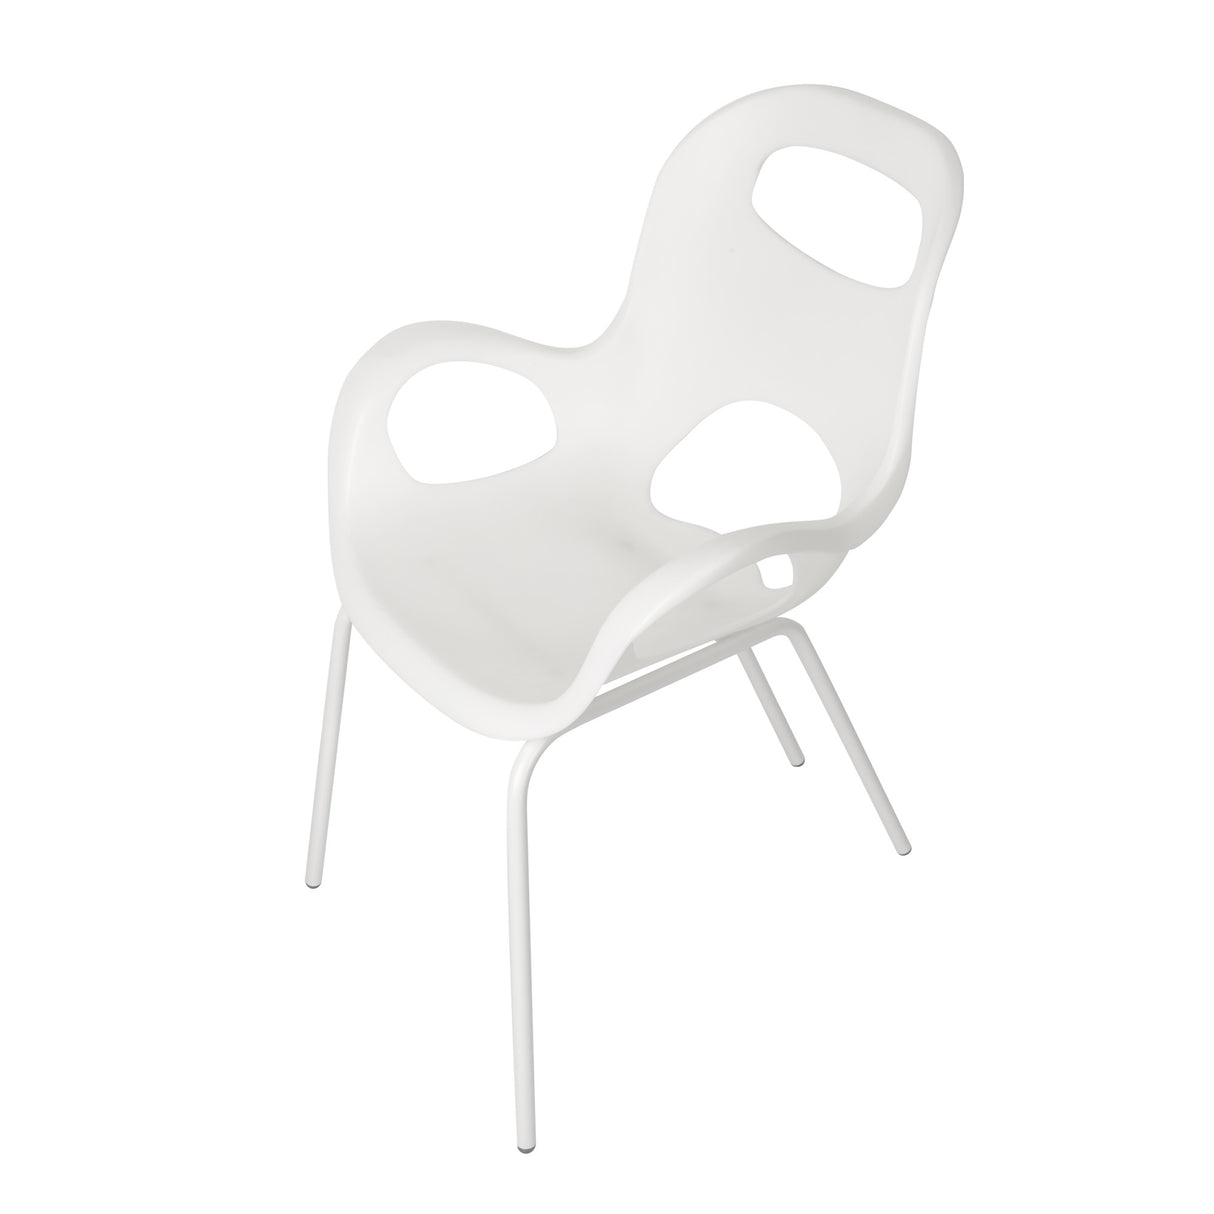 umbra chaise design orange brique plastique metal ringo - Kdesign